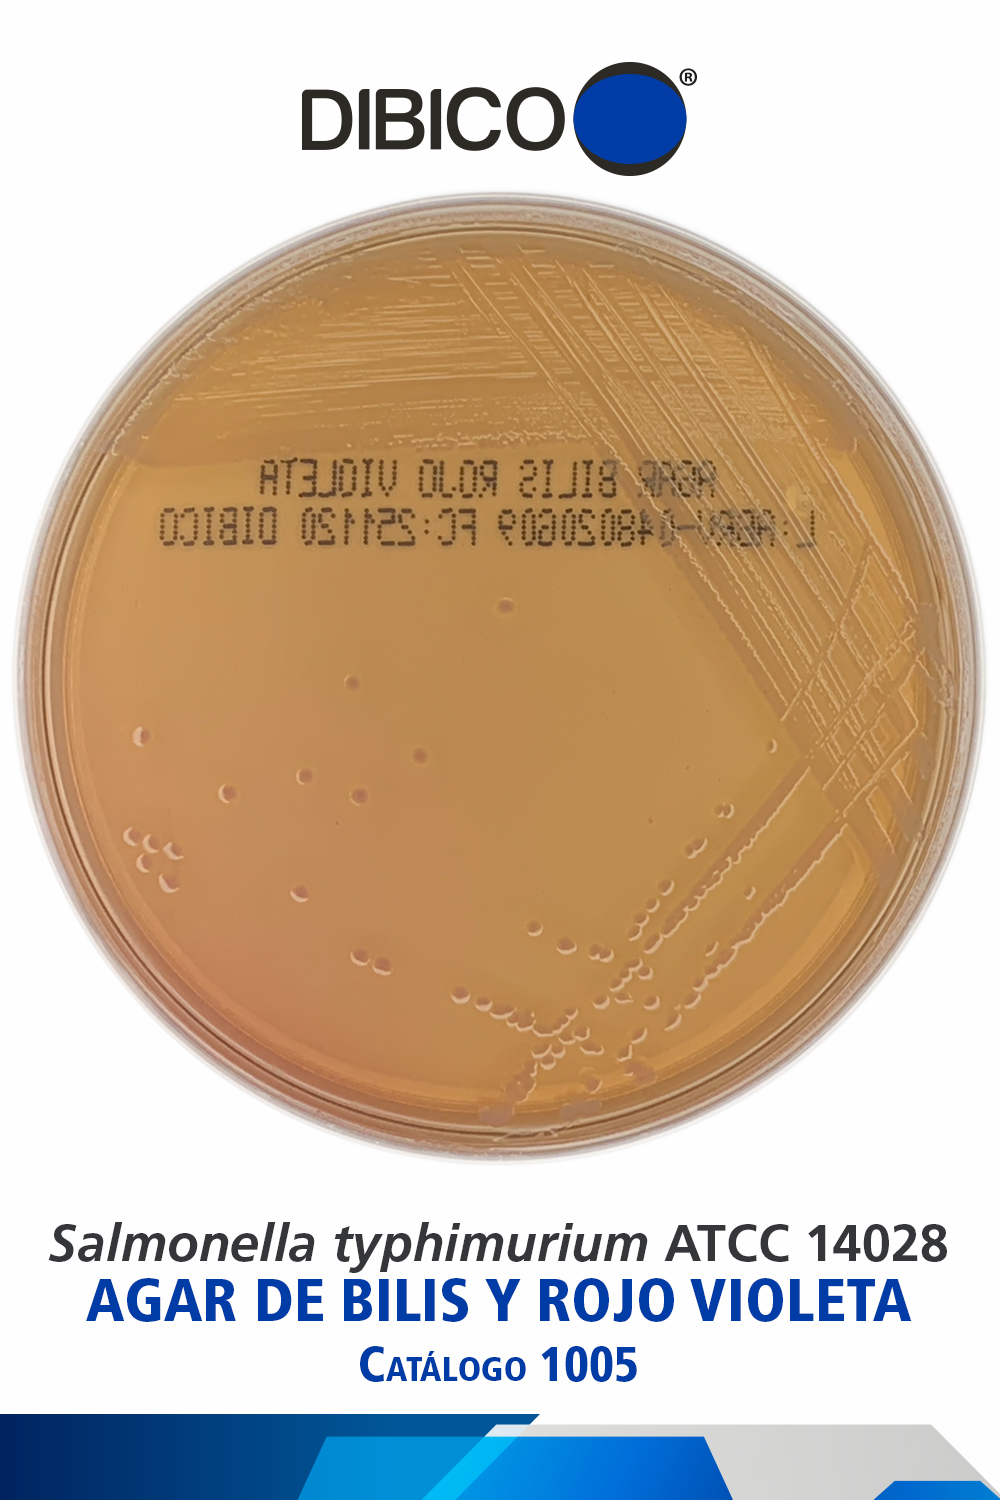 Salmonella typhimurium ATCC 14028 cat 1005